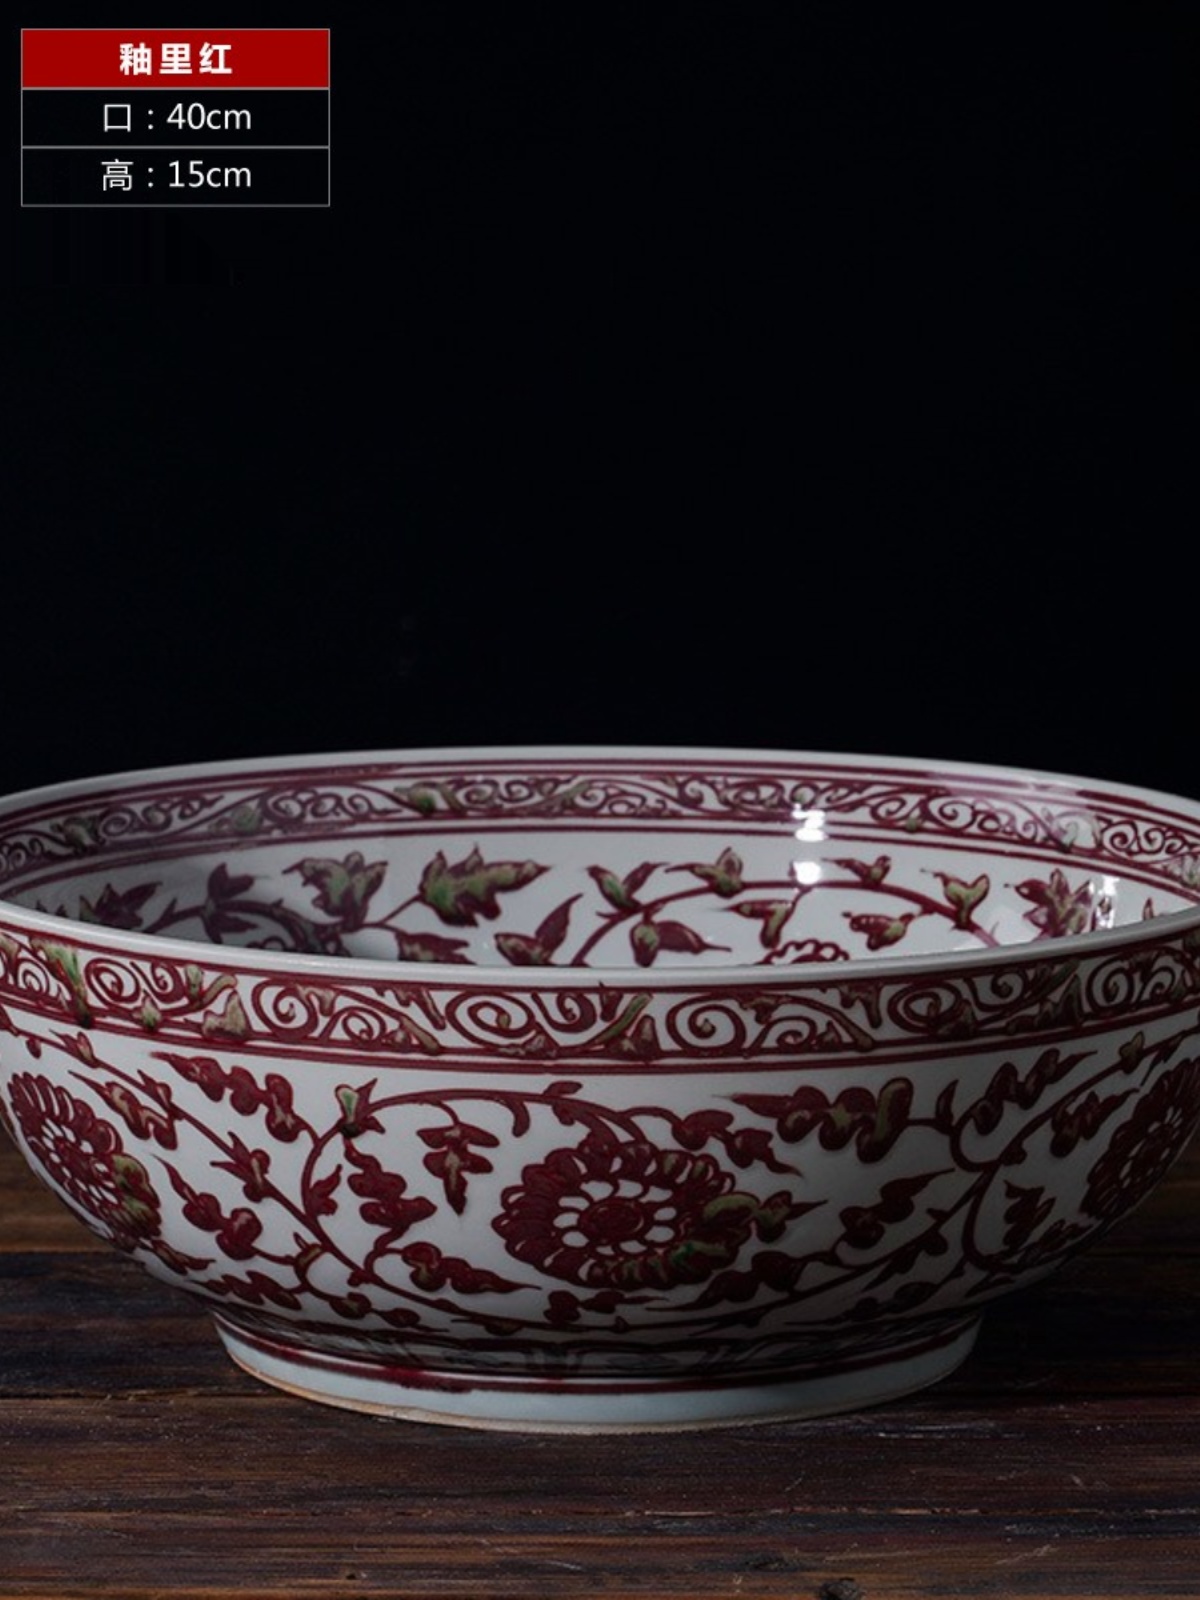 新品仿元代青花手绘大碗陶瓷摆件客厅复古装饰01仿元代釉里红|